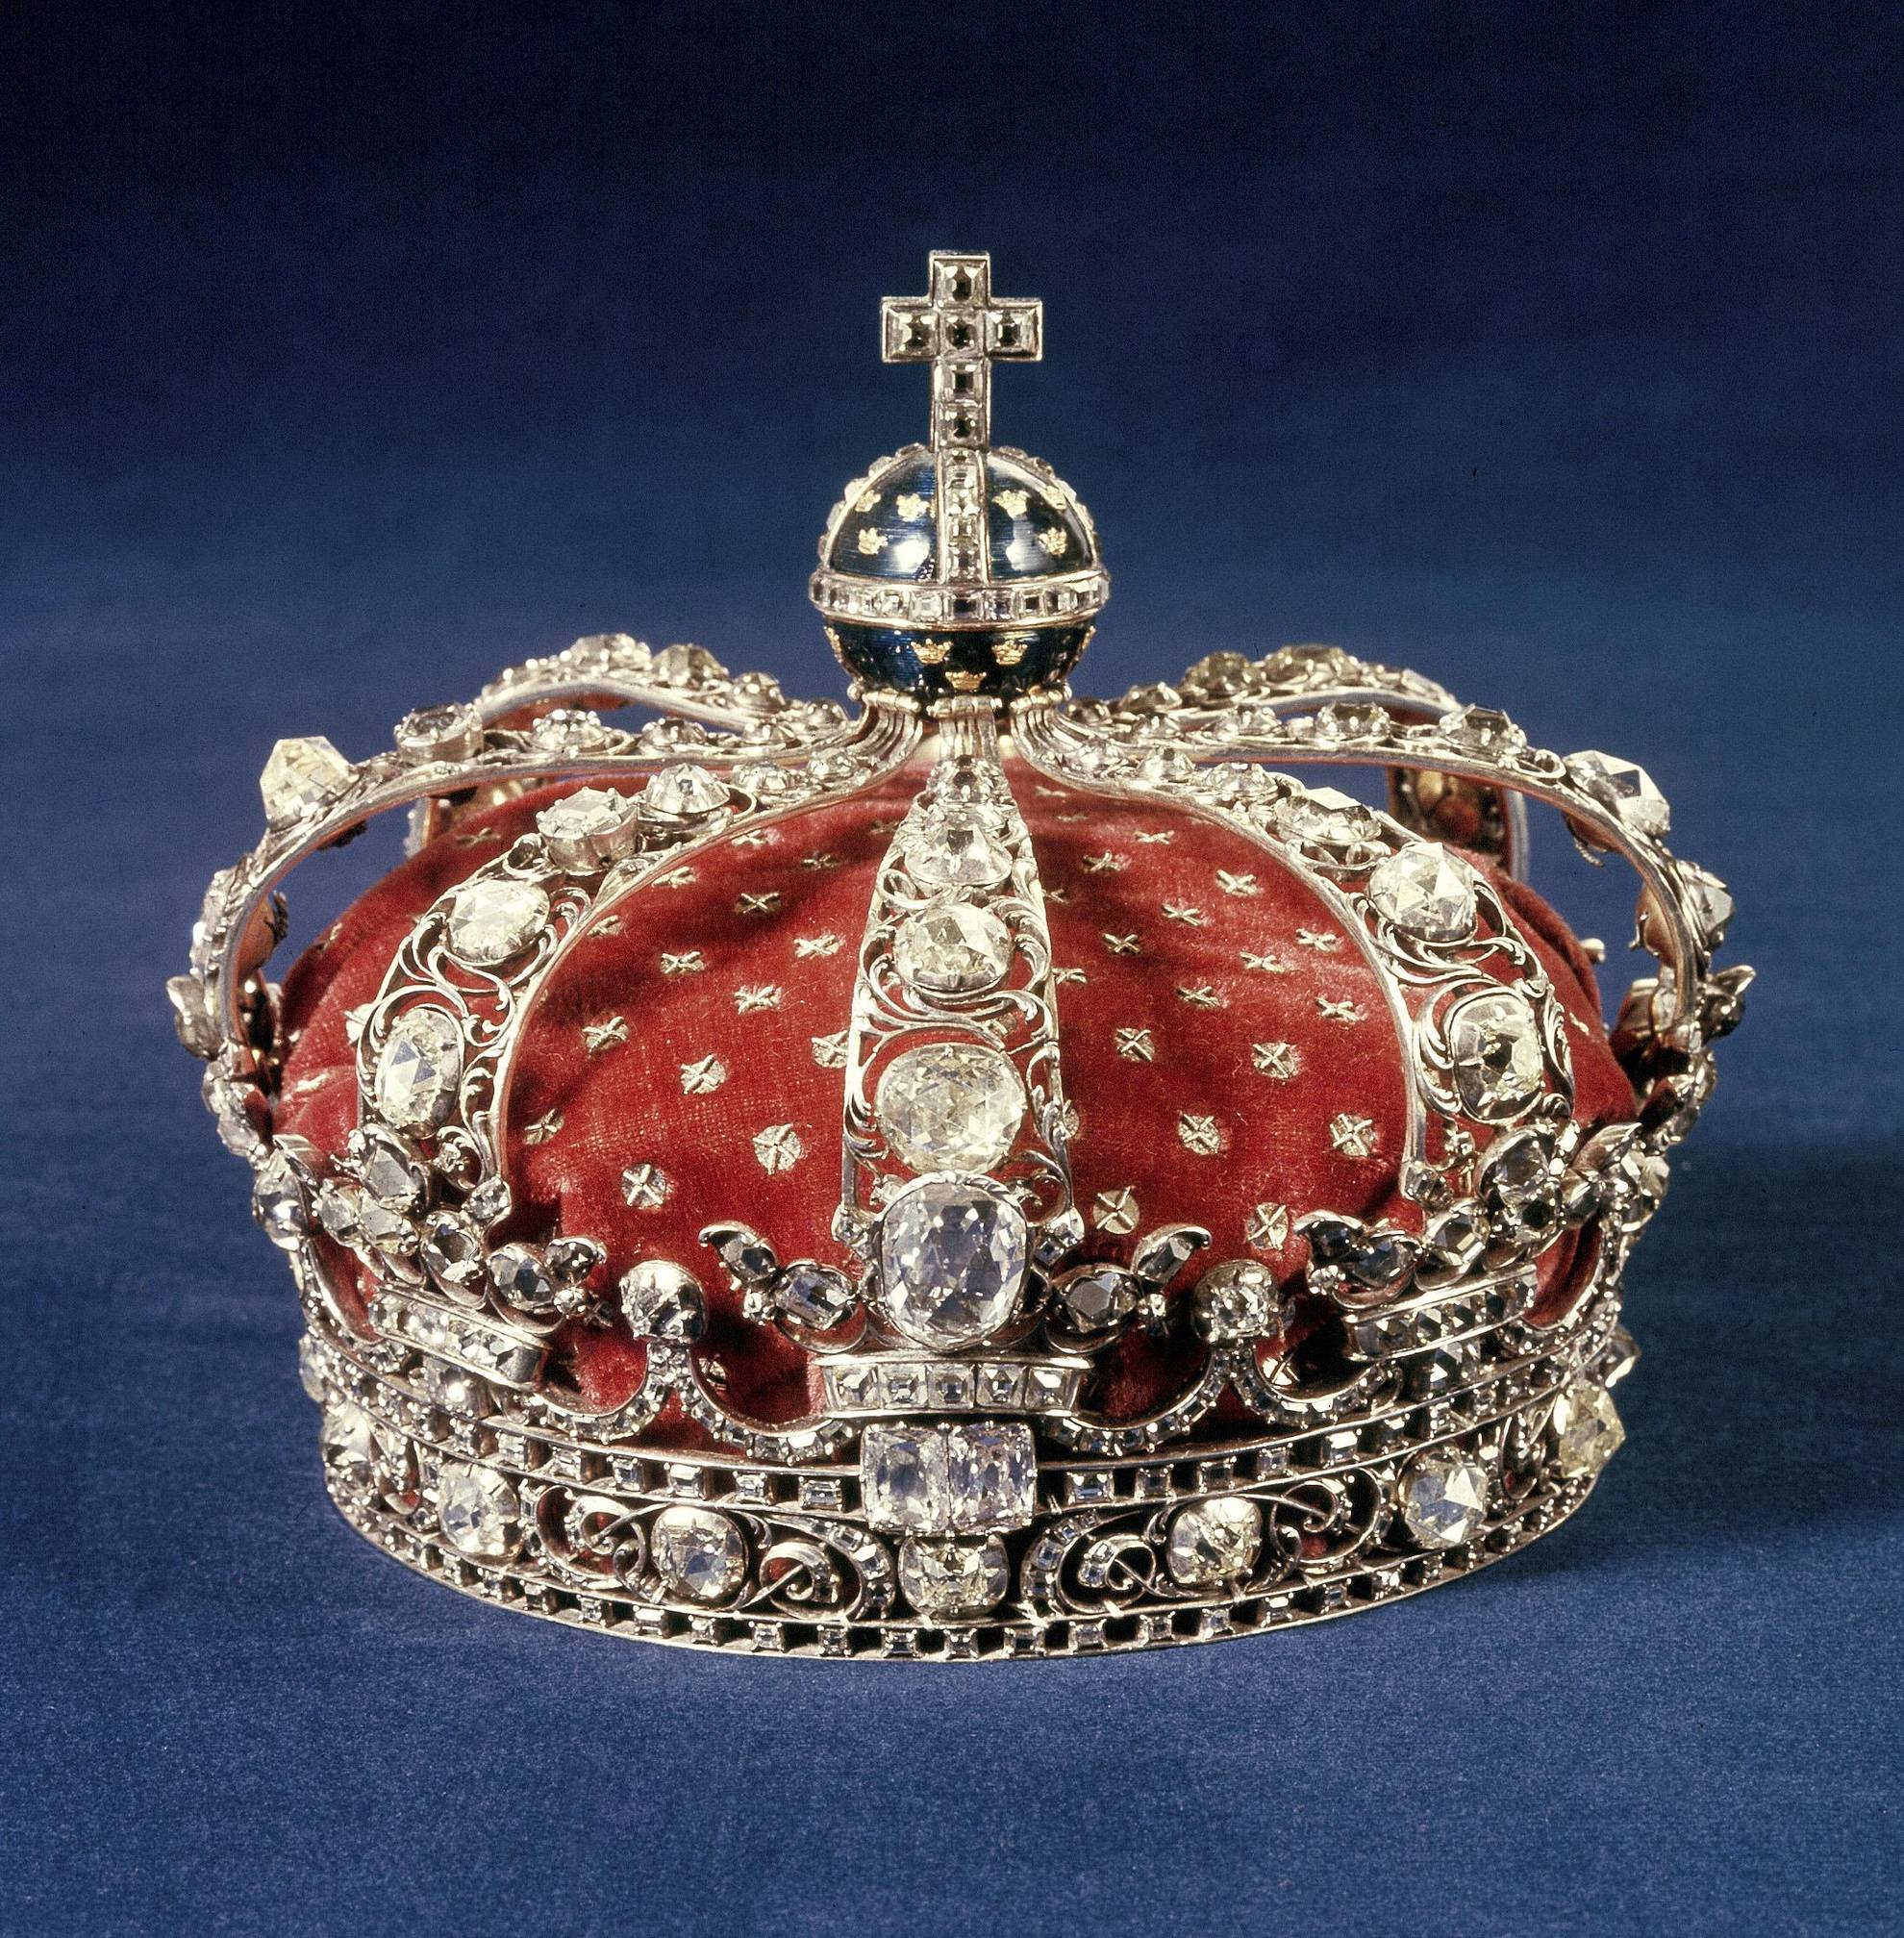 Een met juwelen bezette kroon met diamanten en goud, rustend op blauw fluweel.